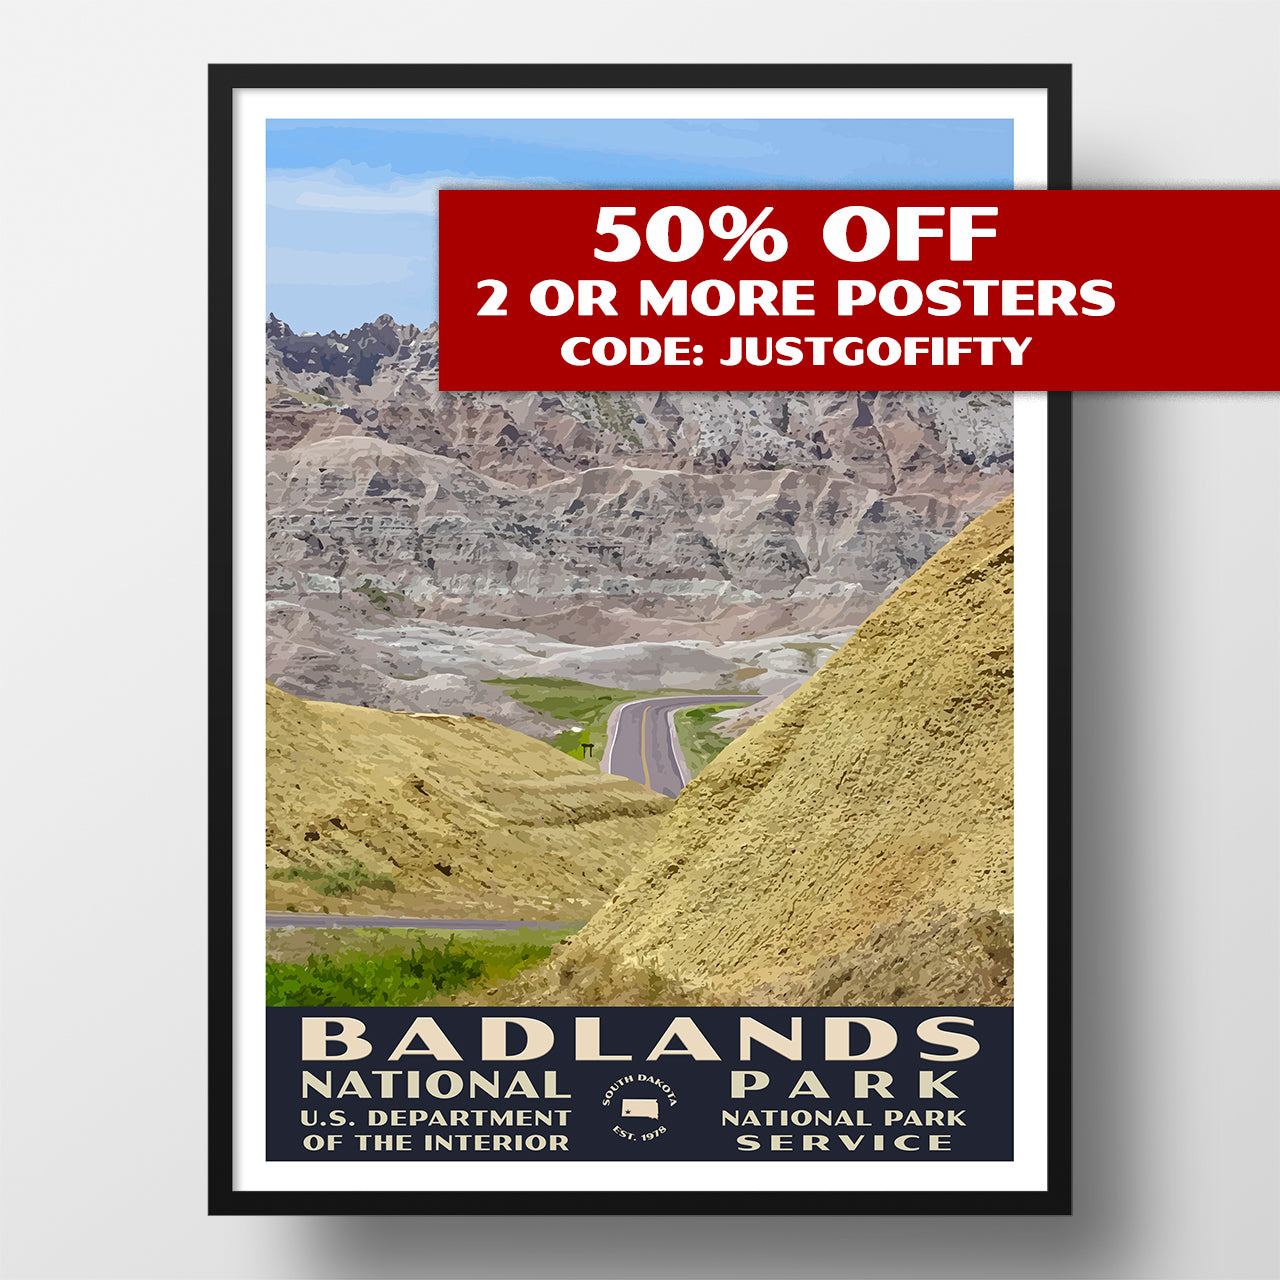 Badlands National Park poster